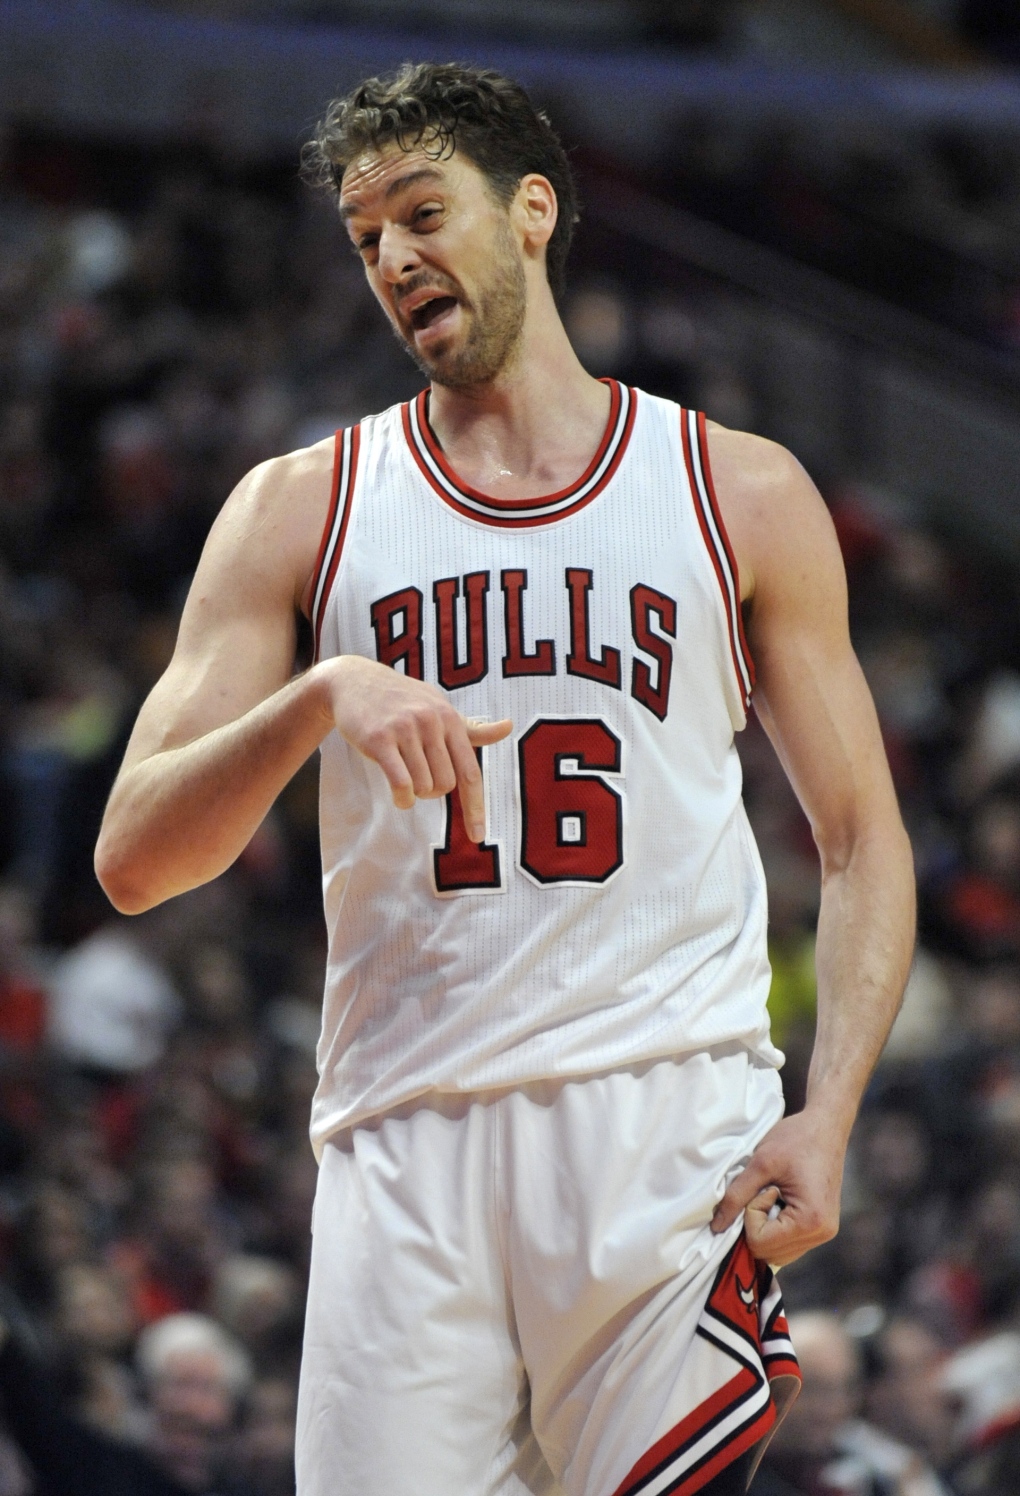 Marco Belinelli hits game-winning 3 for Bulls vs. Jazz